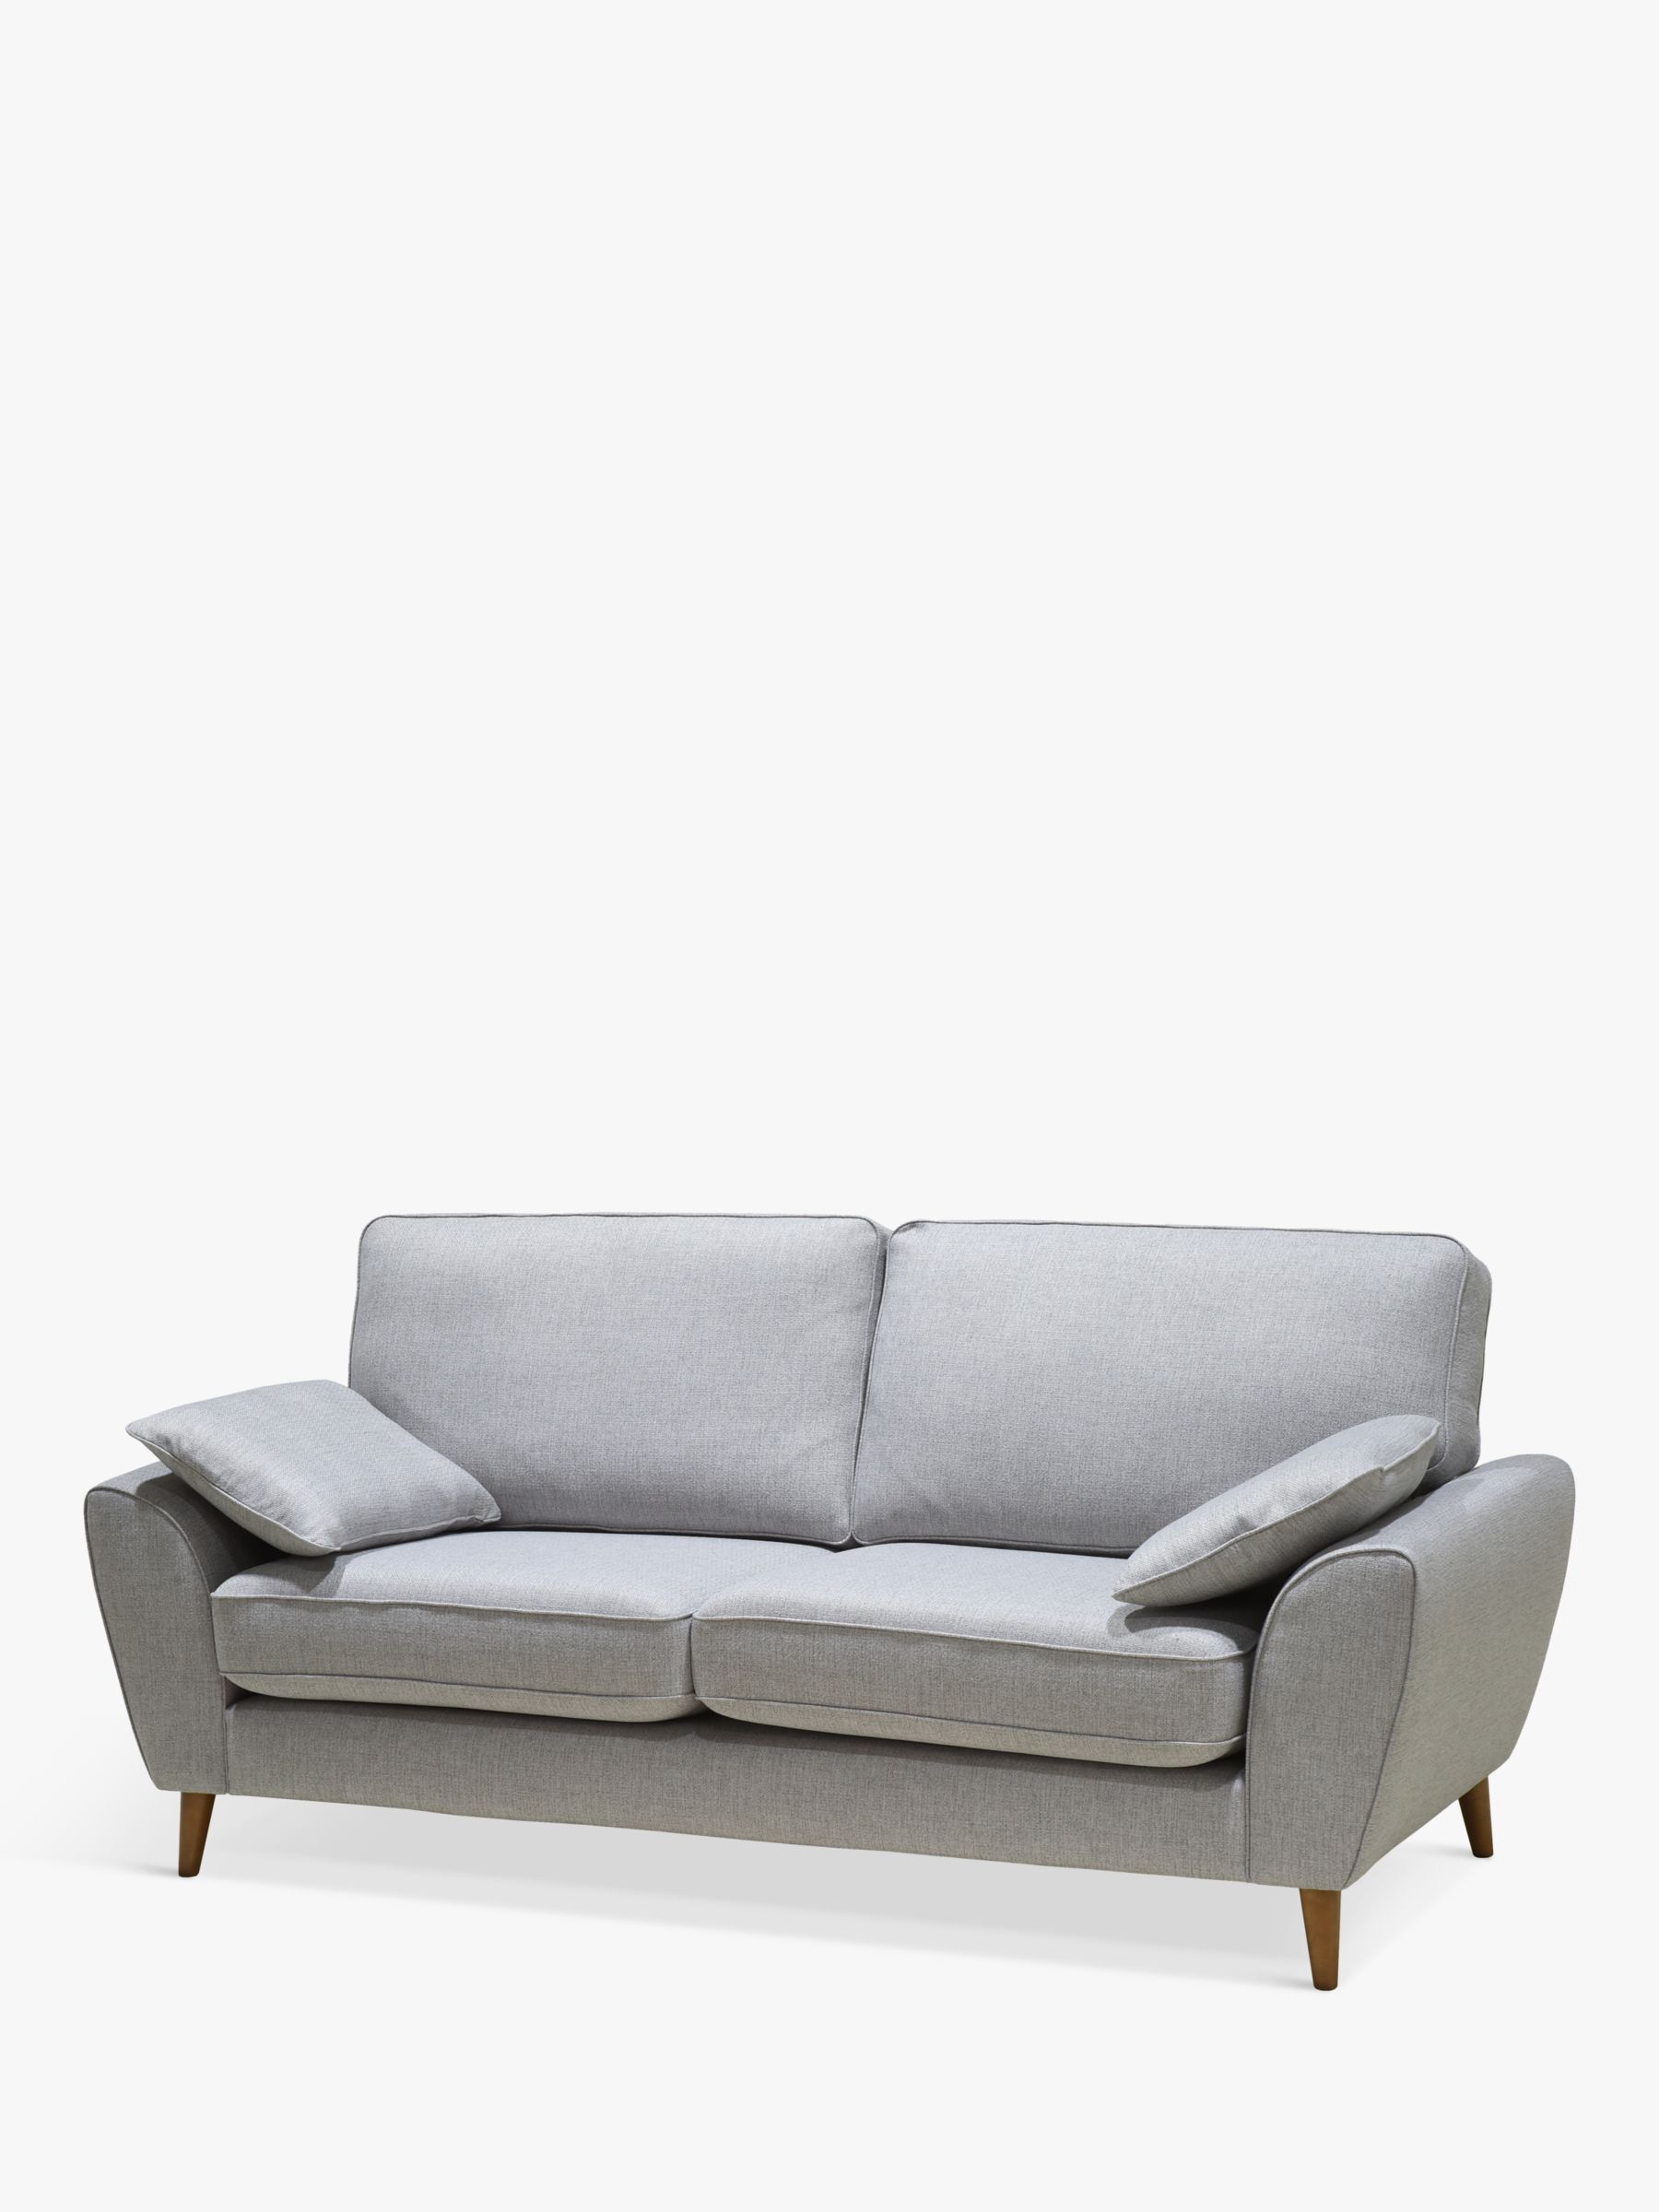 John Lewis Ambleside Large 3 Seater Sofa, Dark Leg, Textured Weave Grey